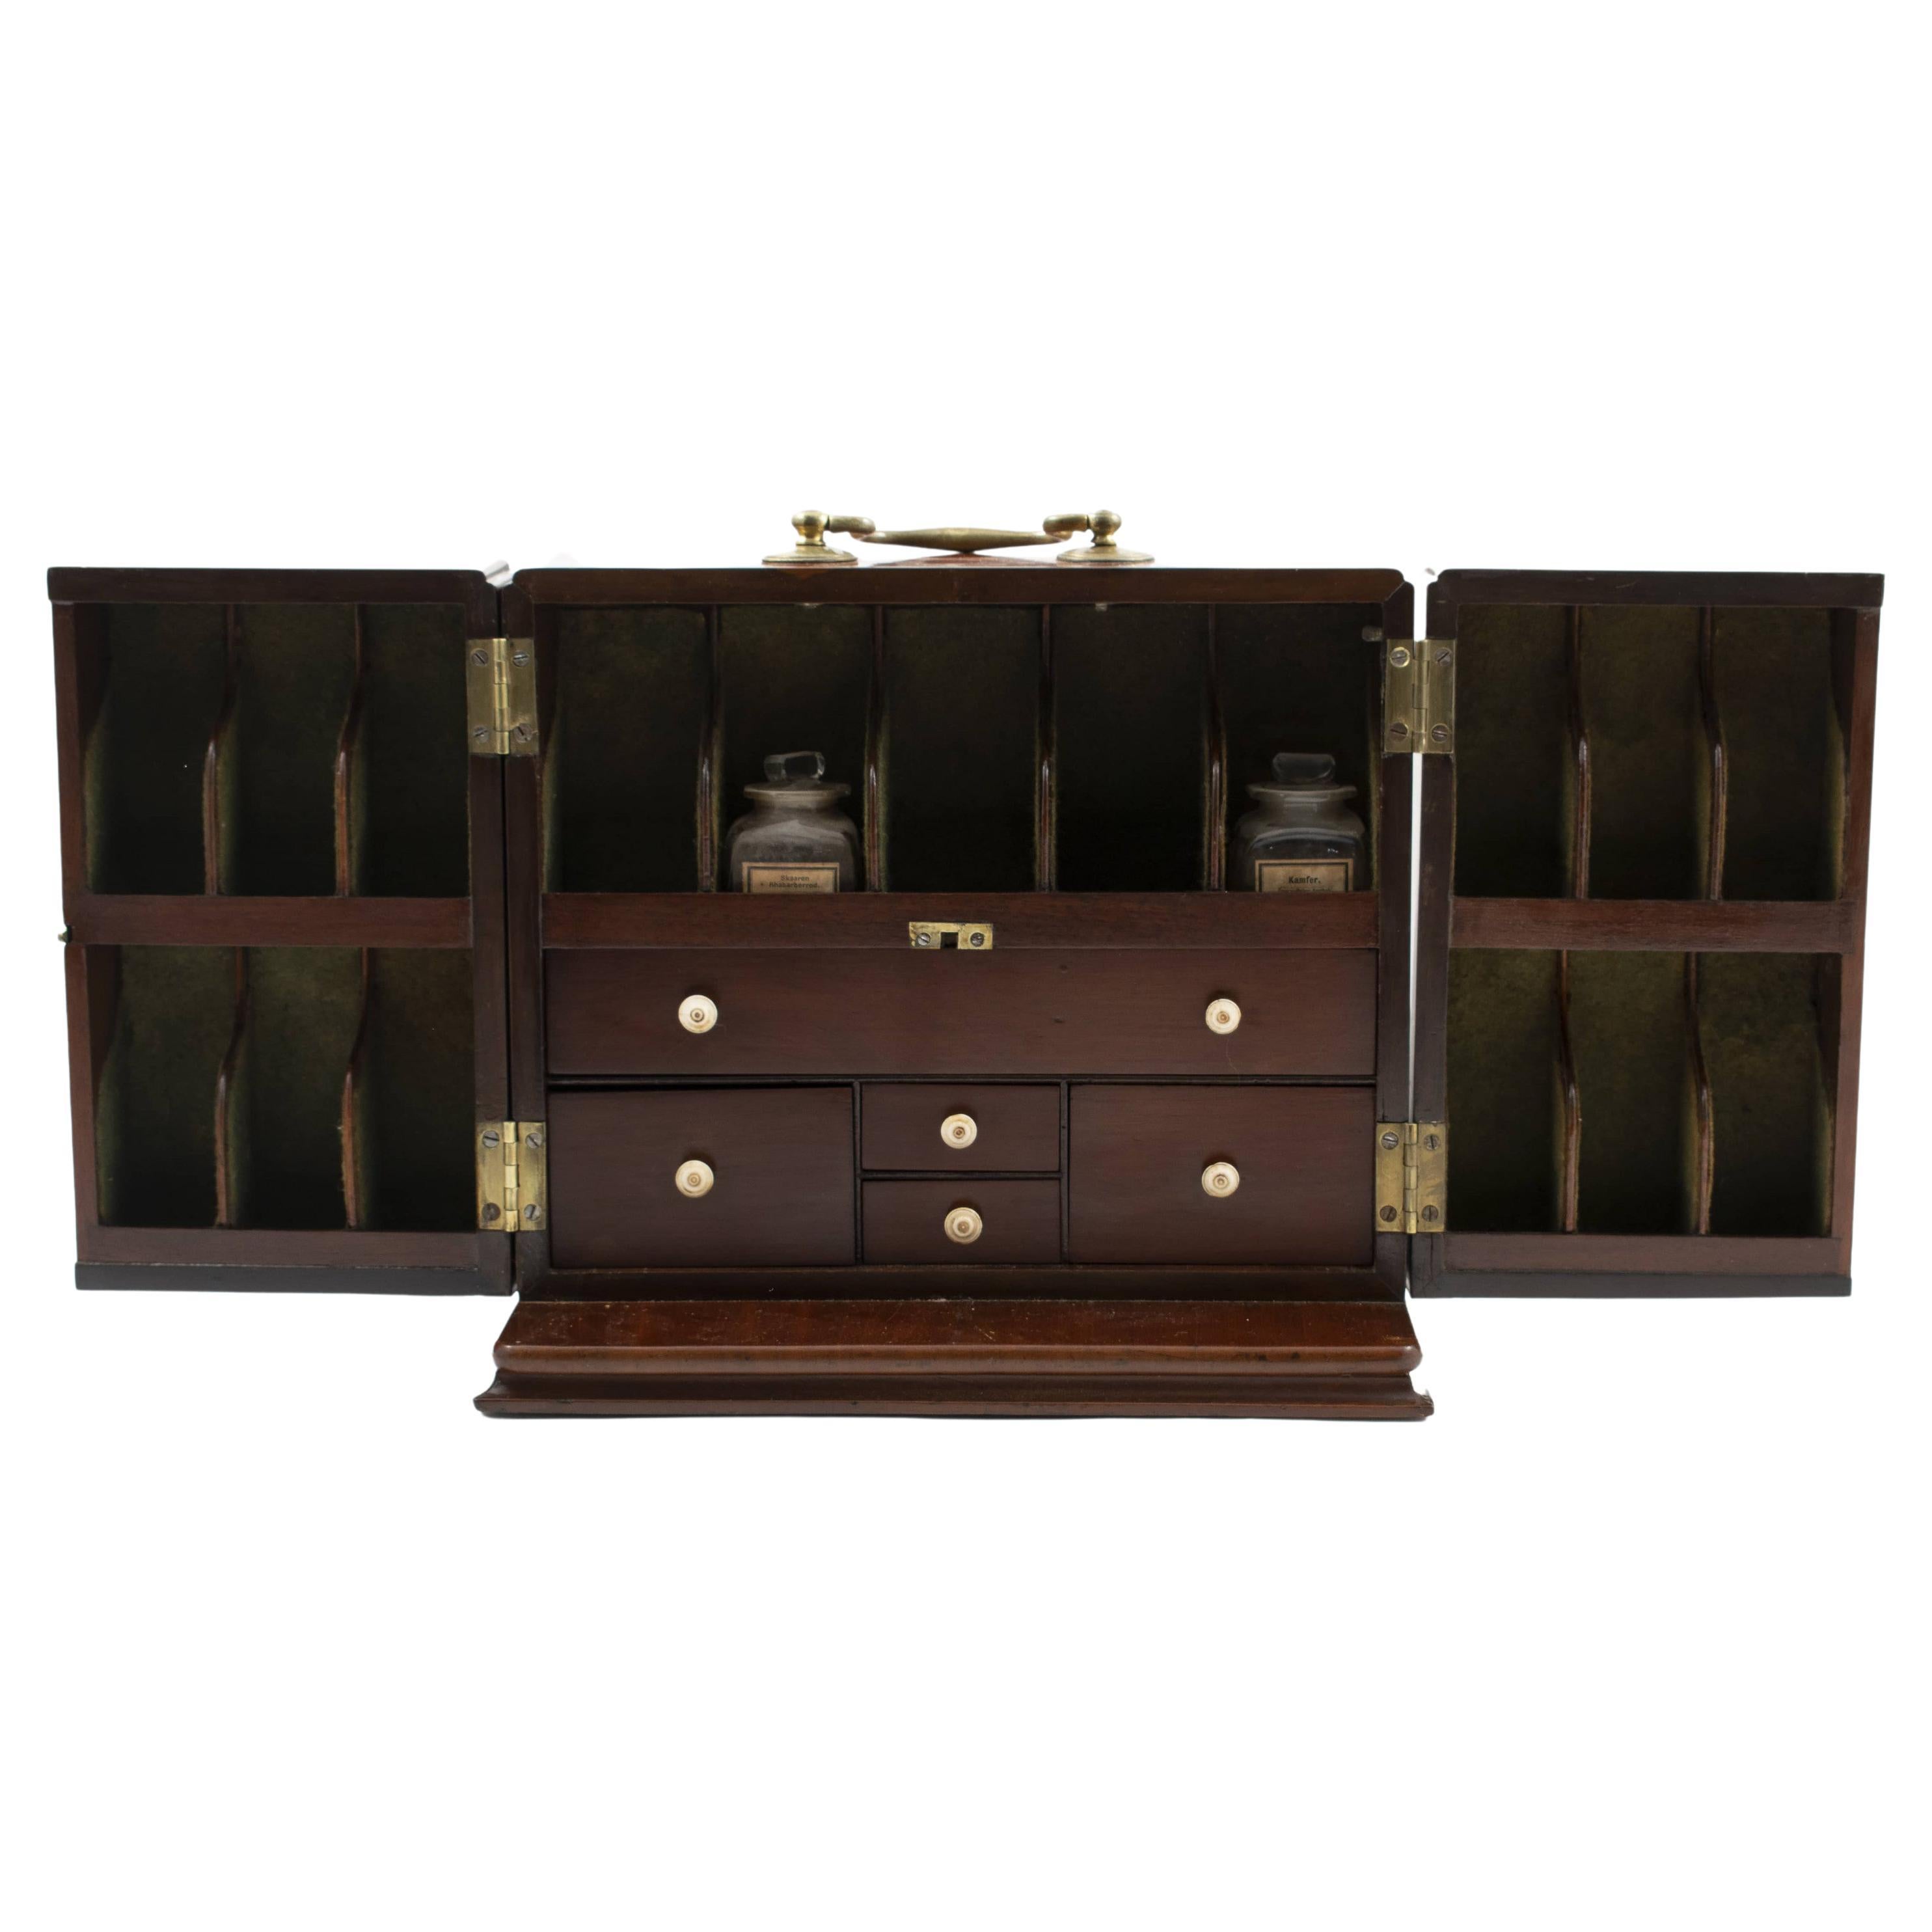 Early 19th Century English Mahogany Travel Apothecary Box, 1810-1820